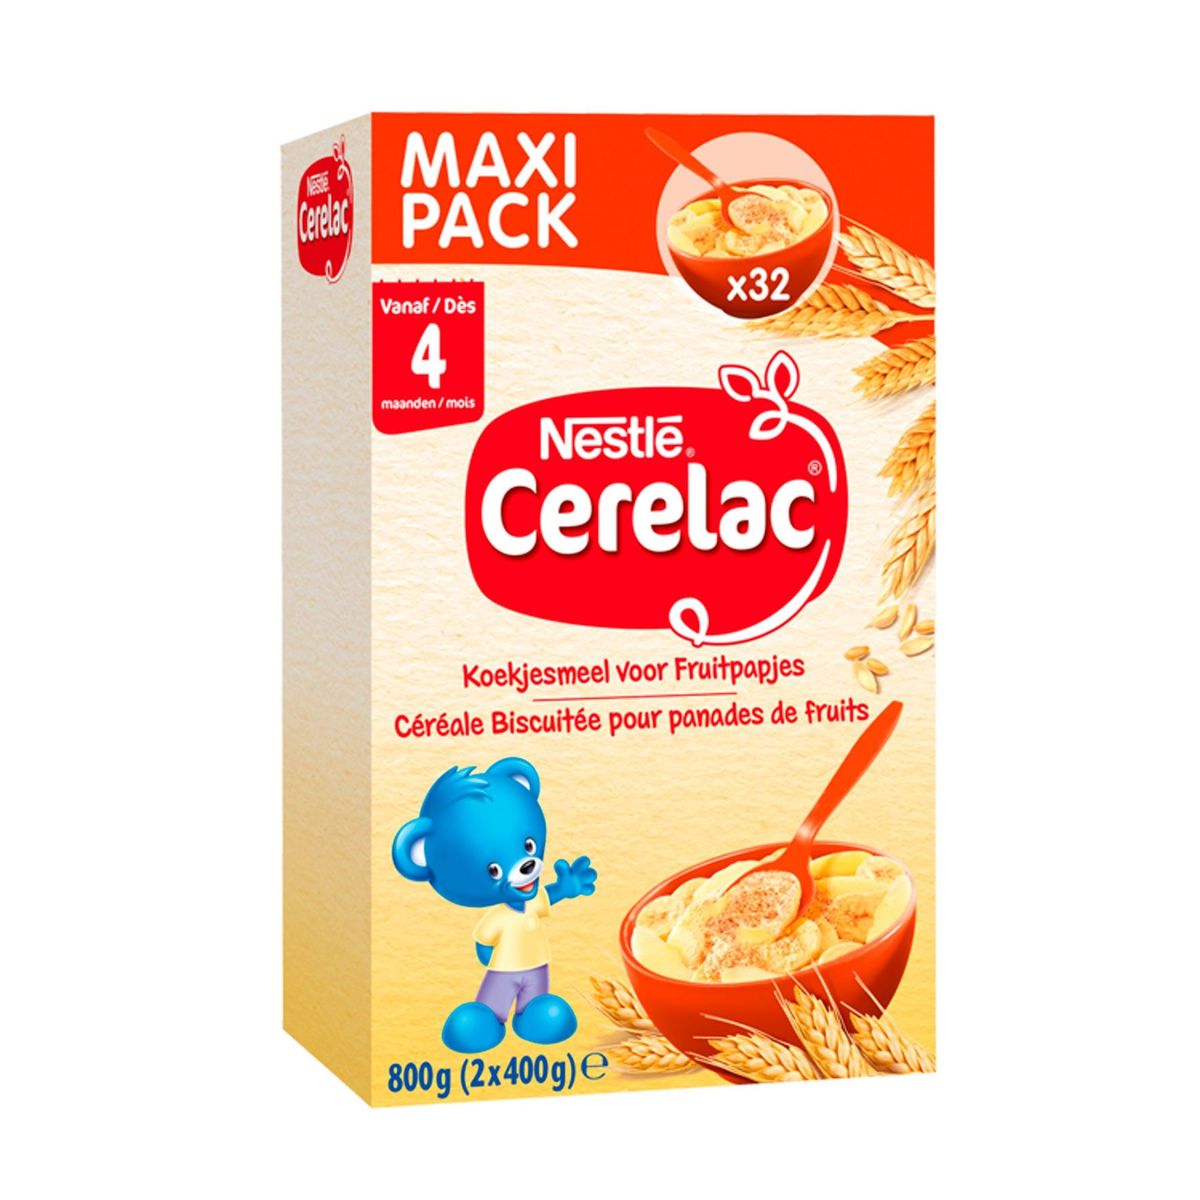 Cerelac Koekjesmeel voor Fruitpapjes 4M+ Maxi Pack 2 x 400 g